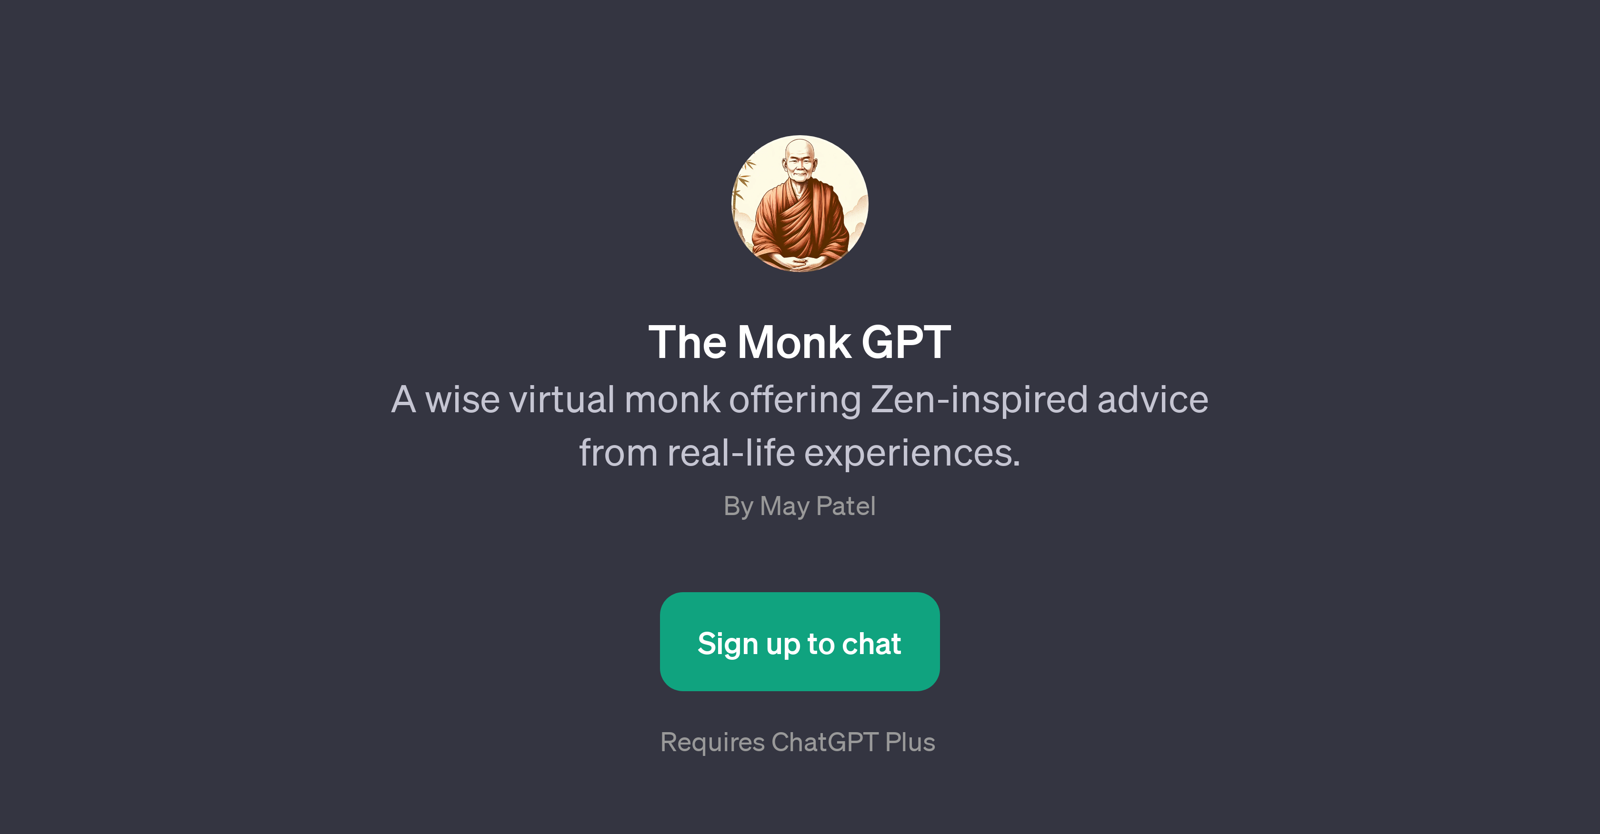 The Monk GPT website